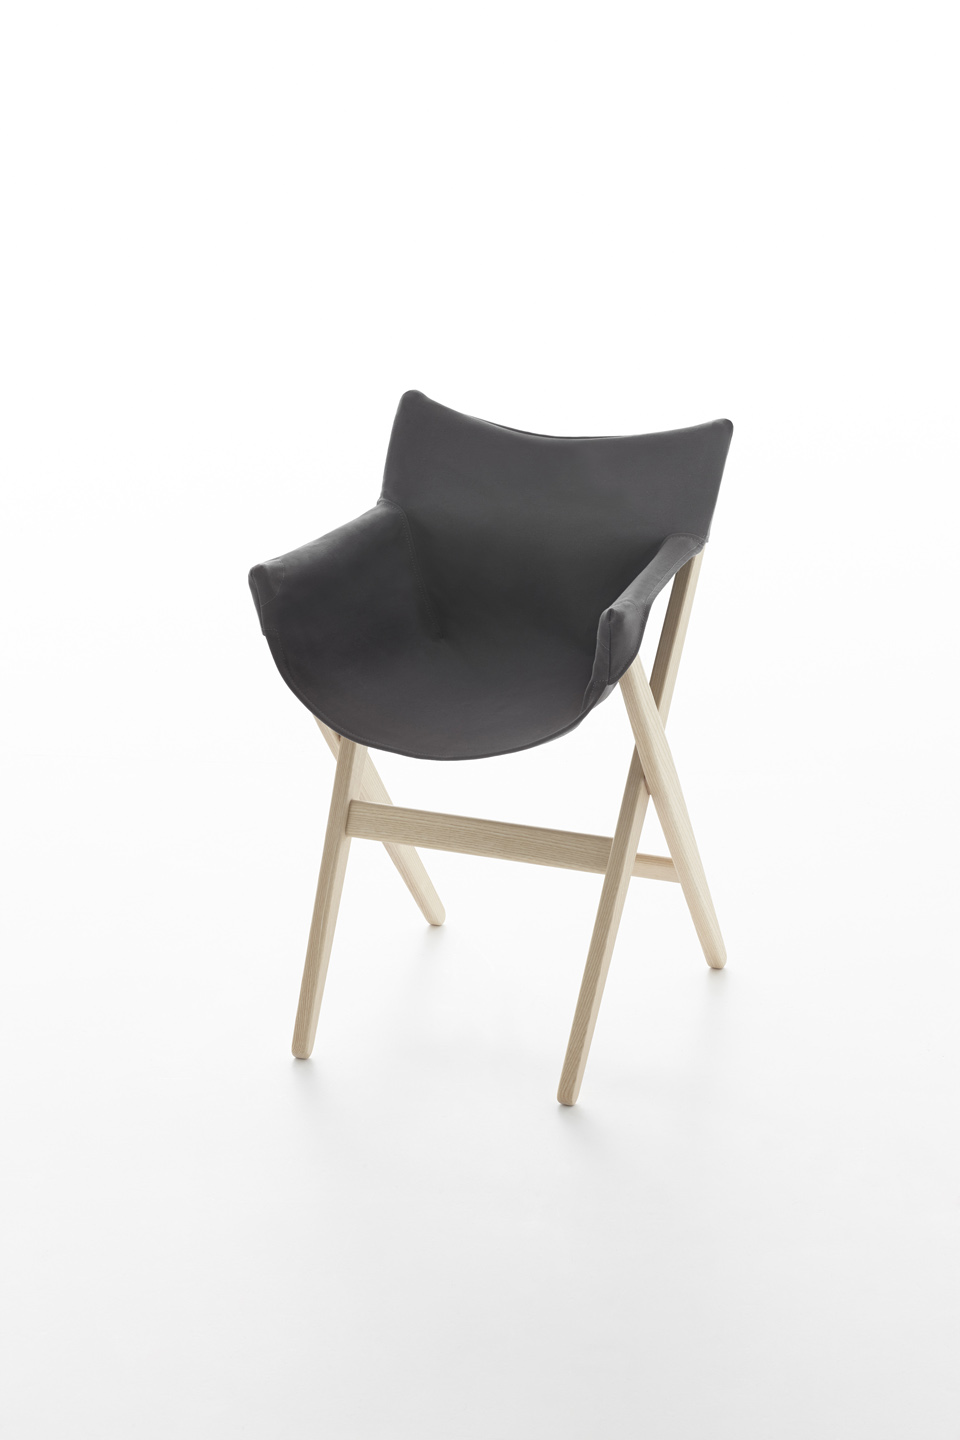 Sling furniture | Design Indaba